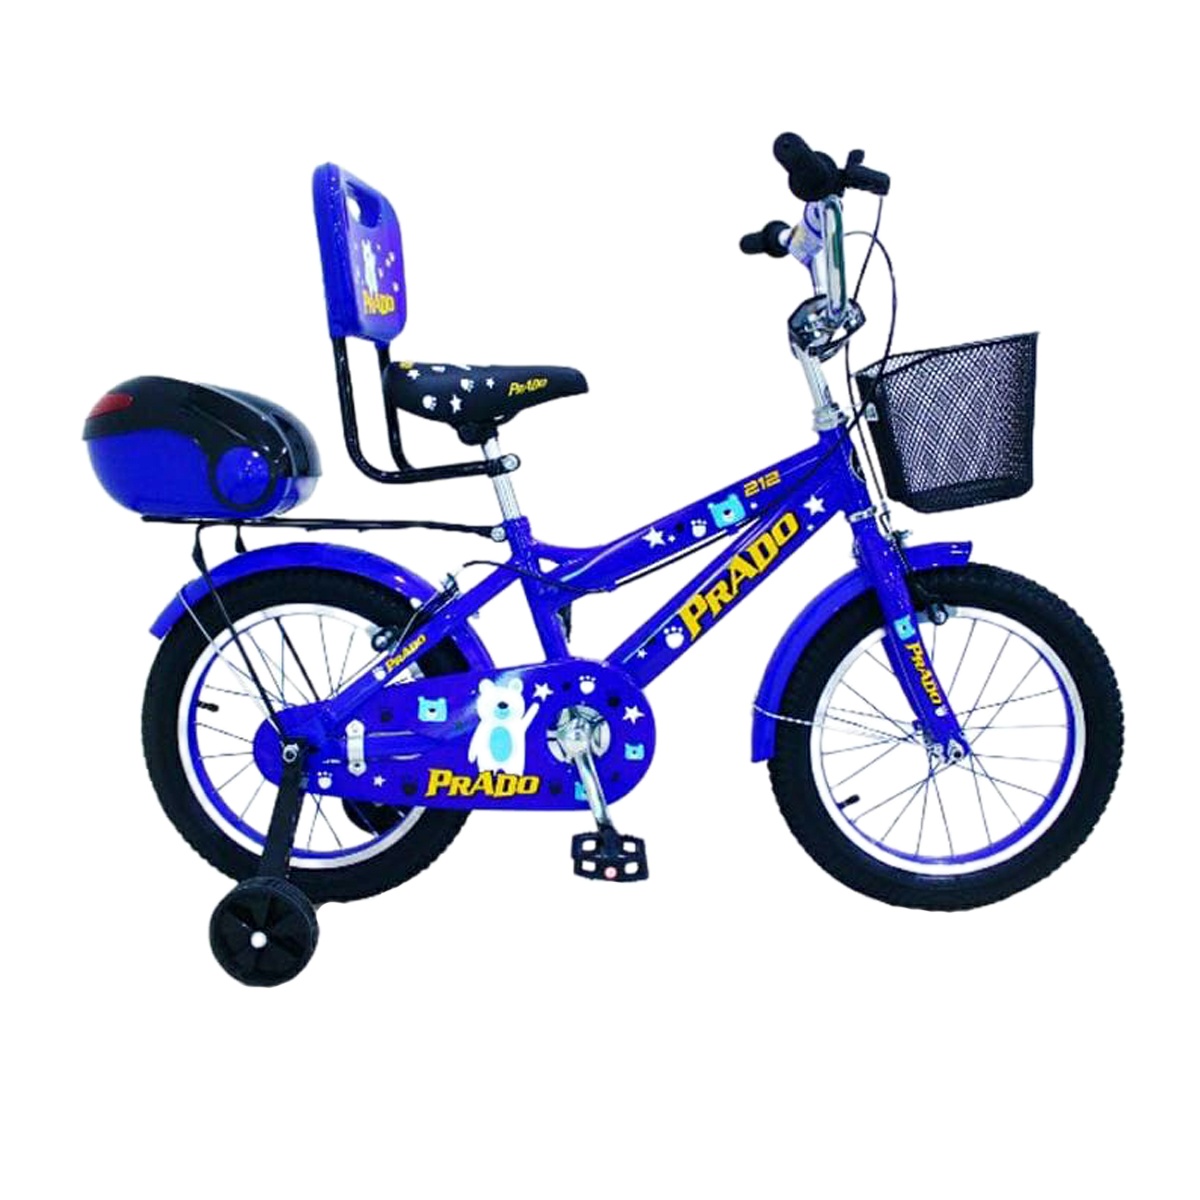 دوچرخه شهری مدل پرادو کد 1600626 سایز 16